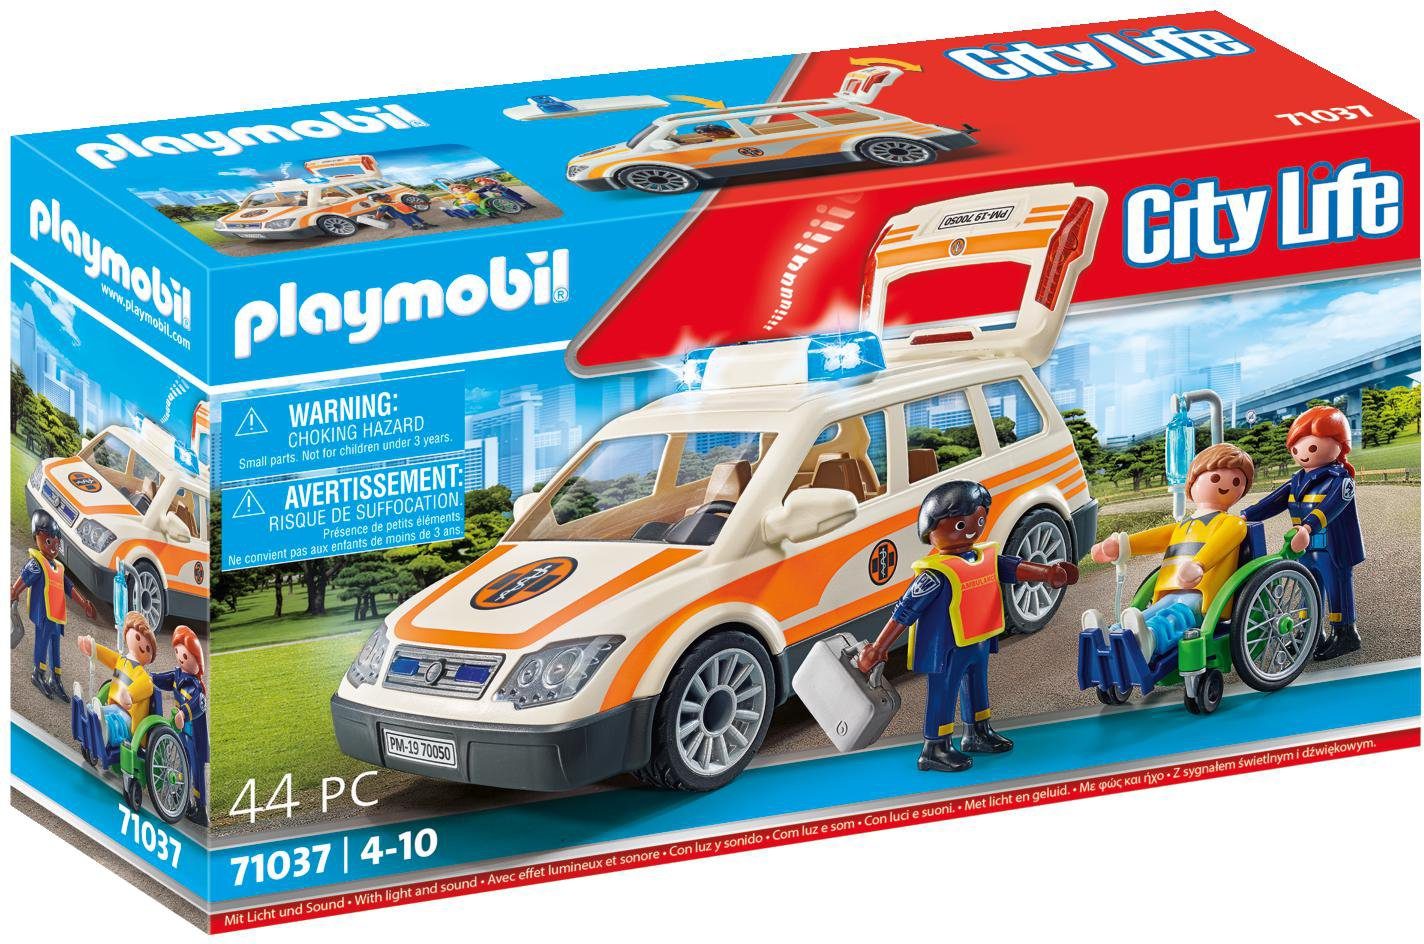 Playmobil ist nicht nur für Kinder - tolle Sets von A-Team bis